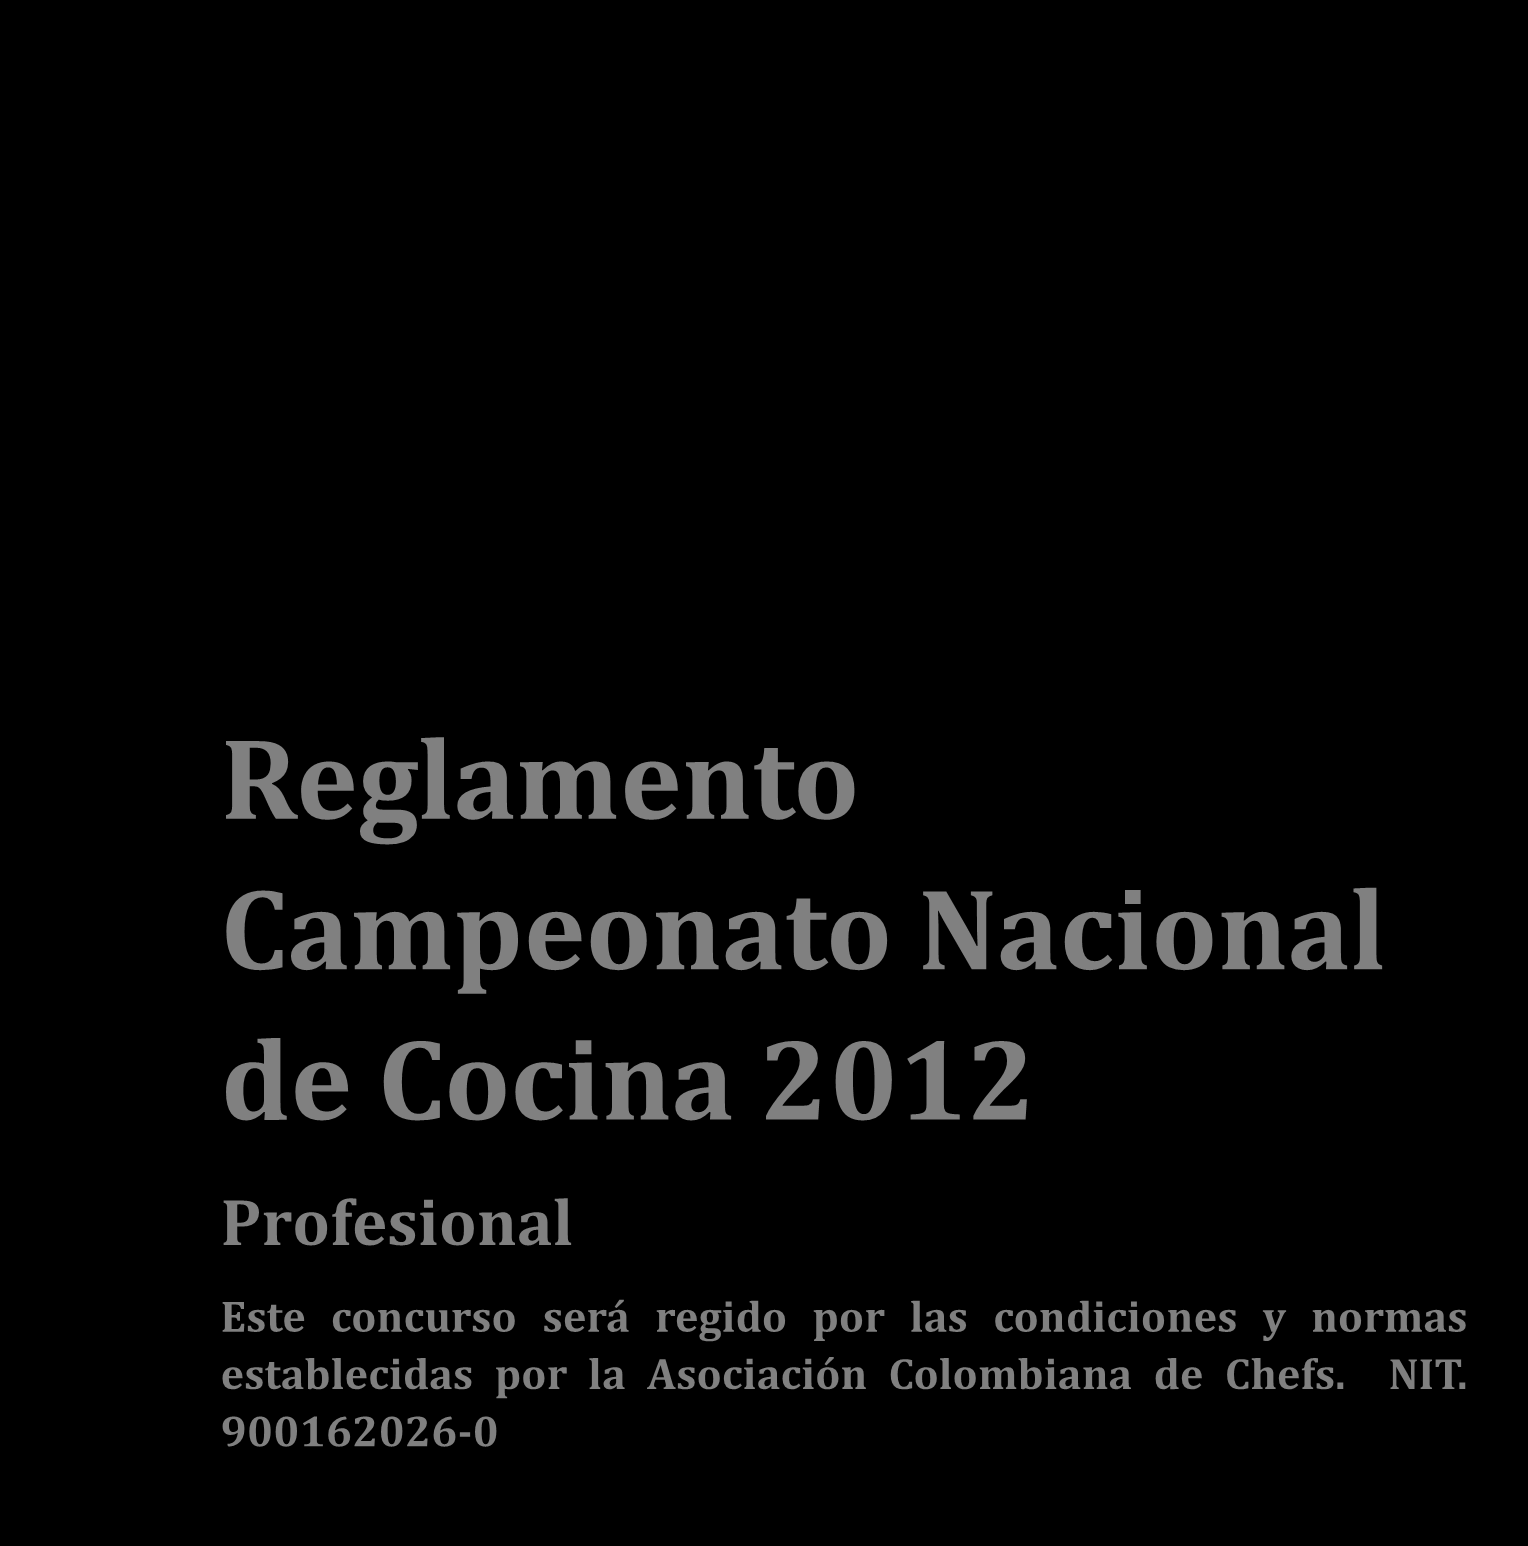 Reglamento Campeonato Nacional de Cocina 2012 Profesional Este concurso será regido por las